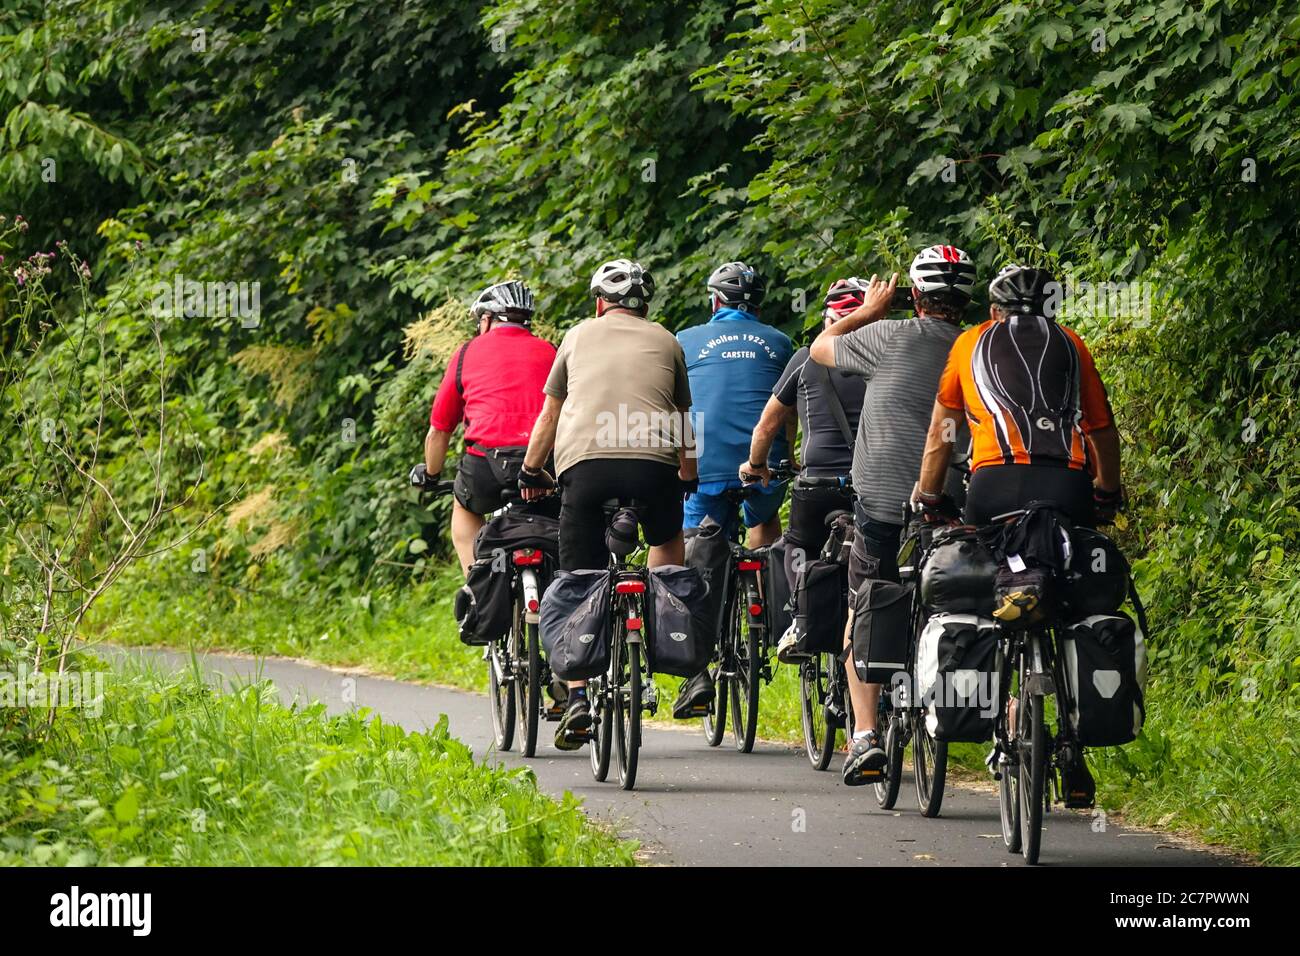 Groupe d'aînés vélo sur une piste cyclable dans la nature Saxe Elberadweg  Allemagne moto arrière Photo Stock - Alamy